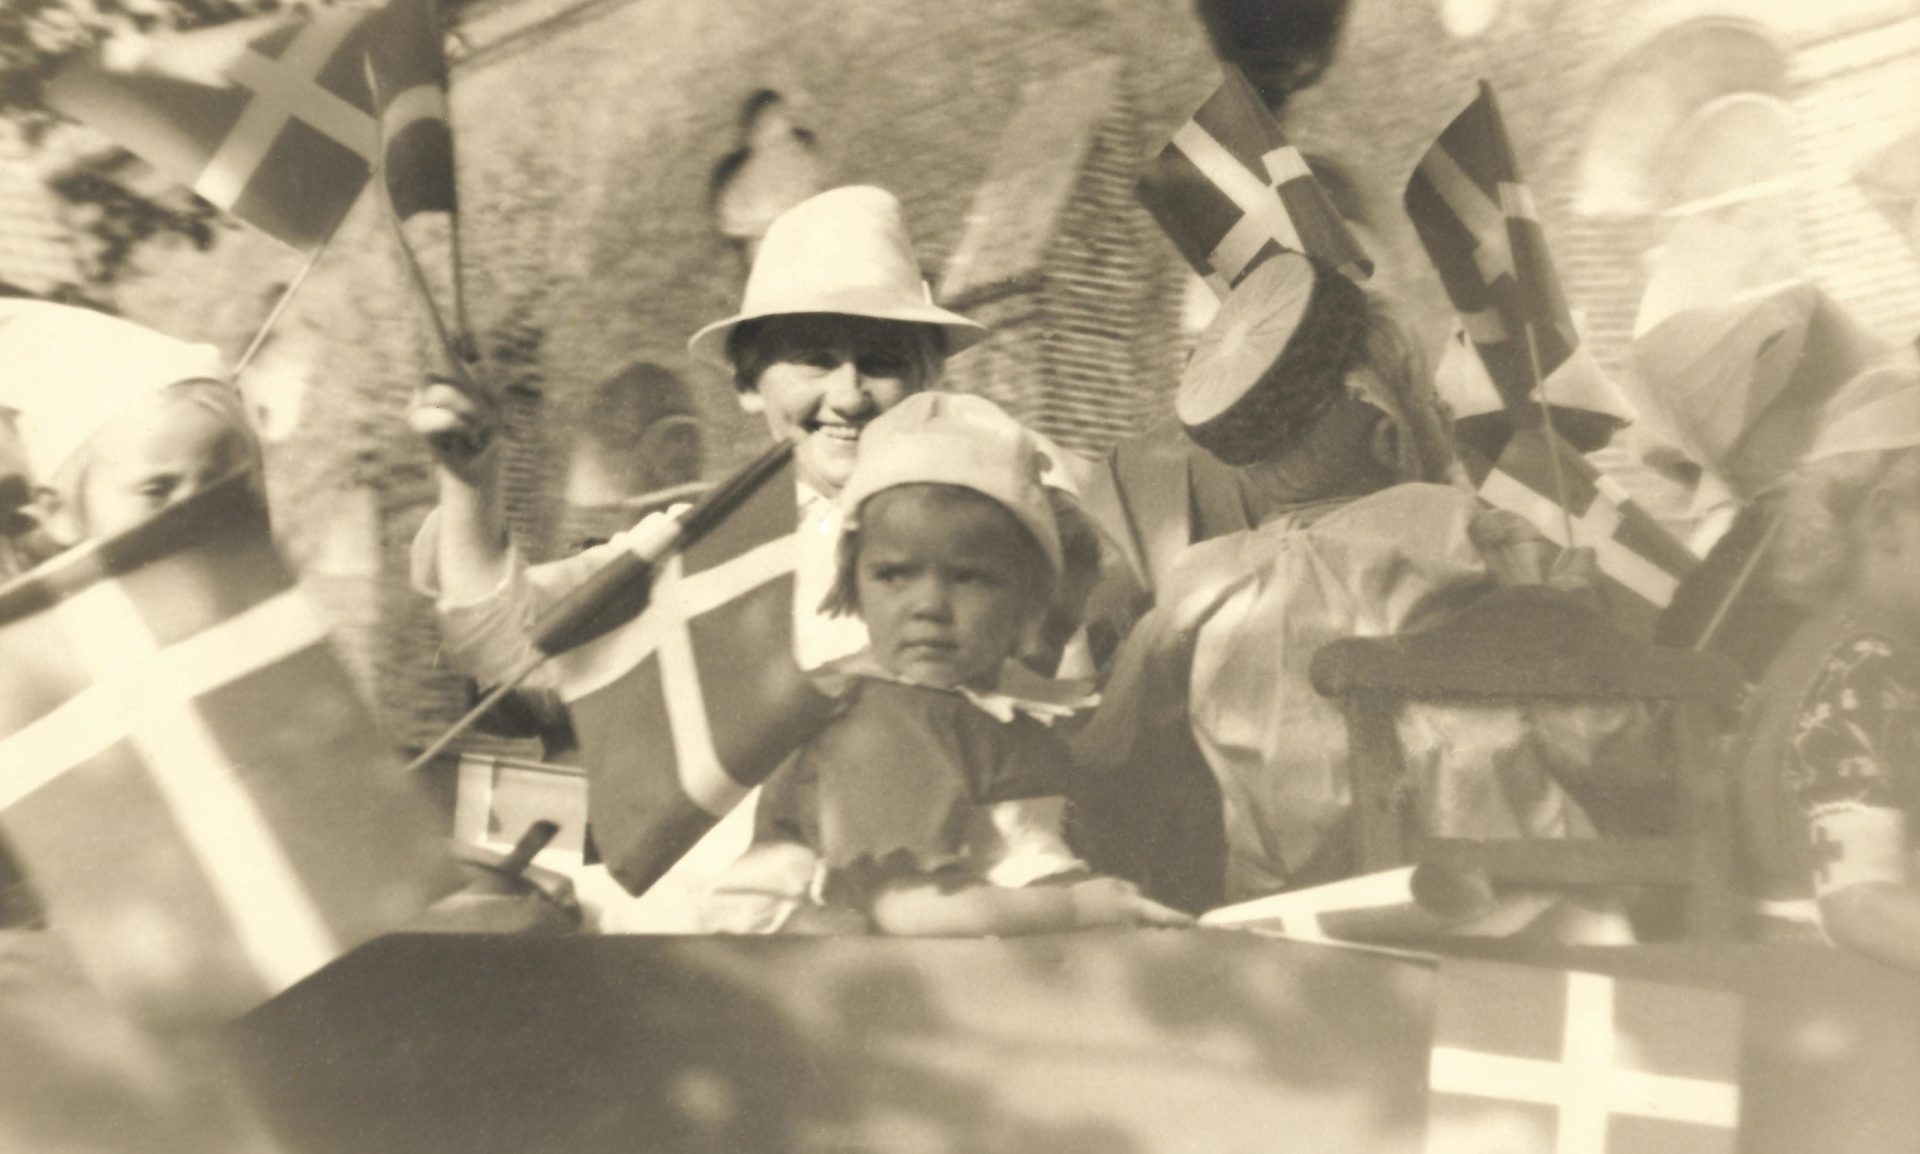 Kristine Kjeldsen (1890-1983), født i Vind og senere mangeårig forstanderinde ved Holstebro Børneasyl, ses siddende i baggrunden med hvid hat omgivet af børn fra asylet. Billedet er efter alt at dømme fra 1940’erne og taget enten i forbindelse med en børnehjælpsdag eller national festdag. I baggrunden genkendes Holstebro Sognekirkes høje mure.